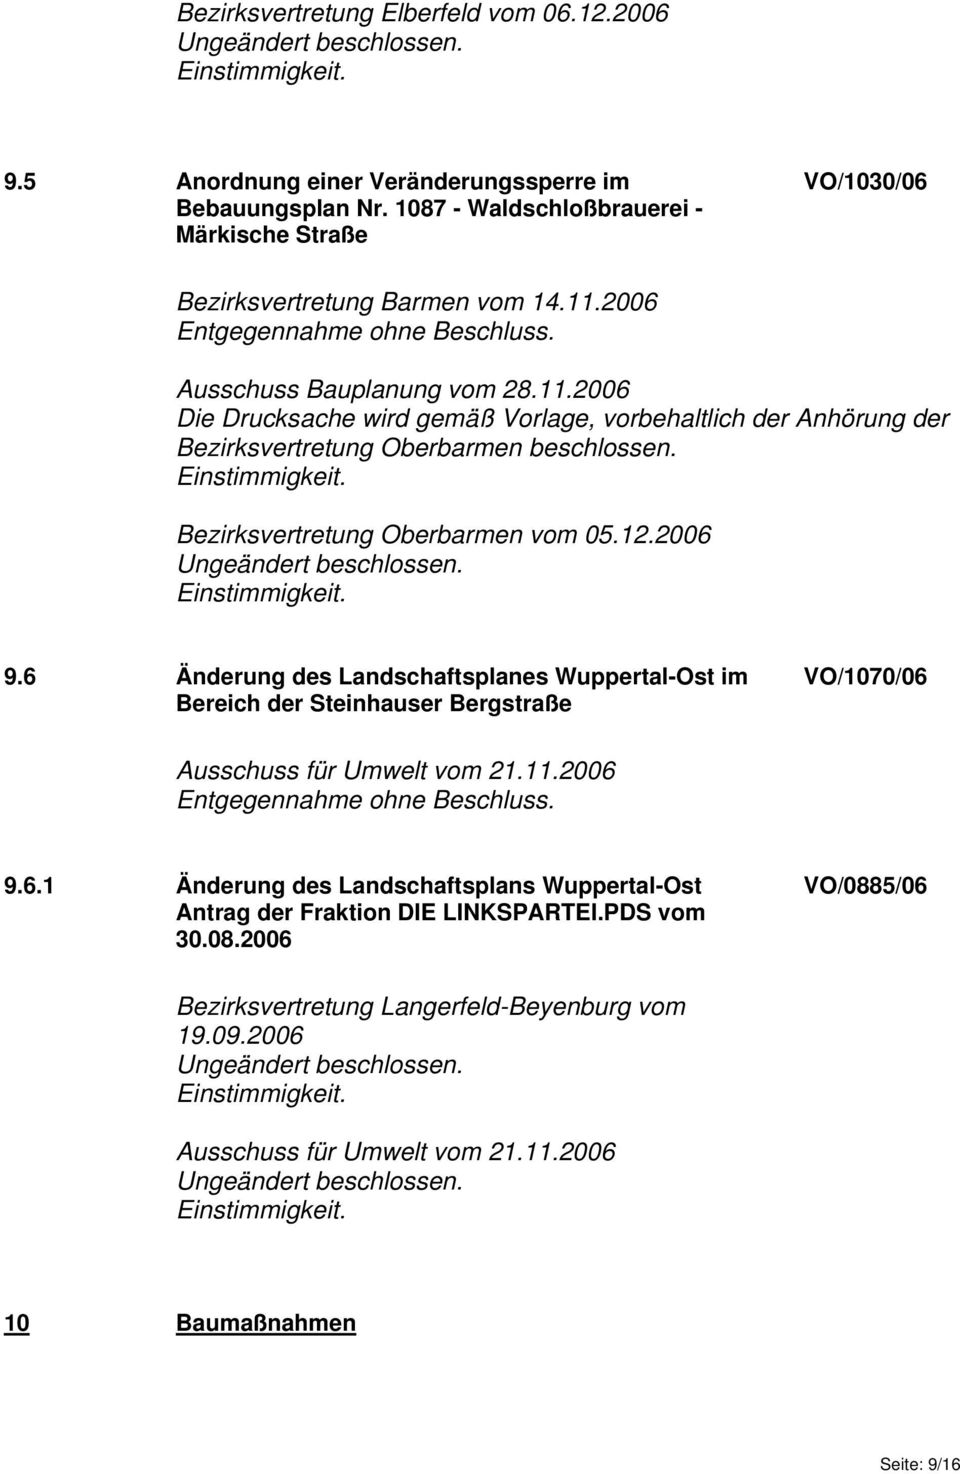 Bezirksvertretung Oberbarmen vom 05.12.2006 9.6 Änderung des Landschaftsplanes Wuppertal-Ost im Bereich der Steinhauser Bergstraße VO/1070/06 Ausschuss für Umwelt vom 21.11.